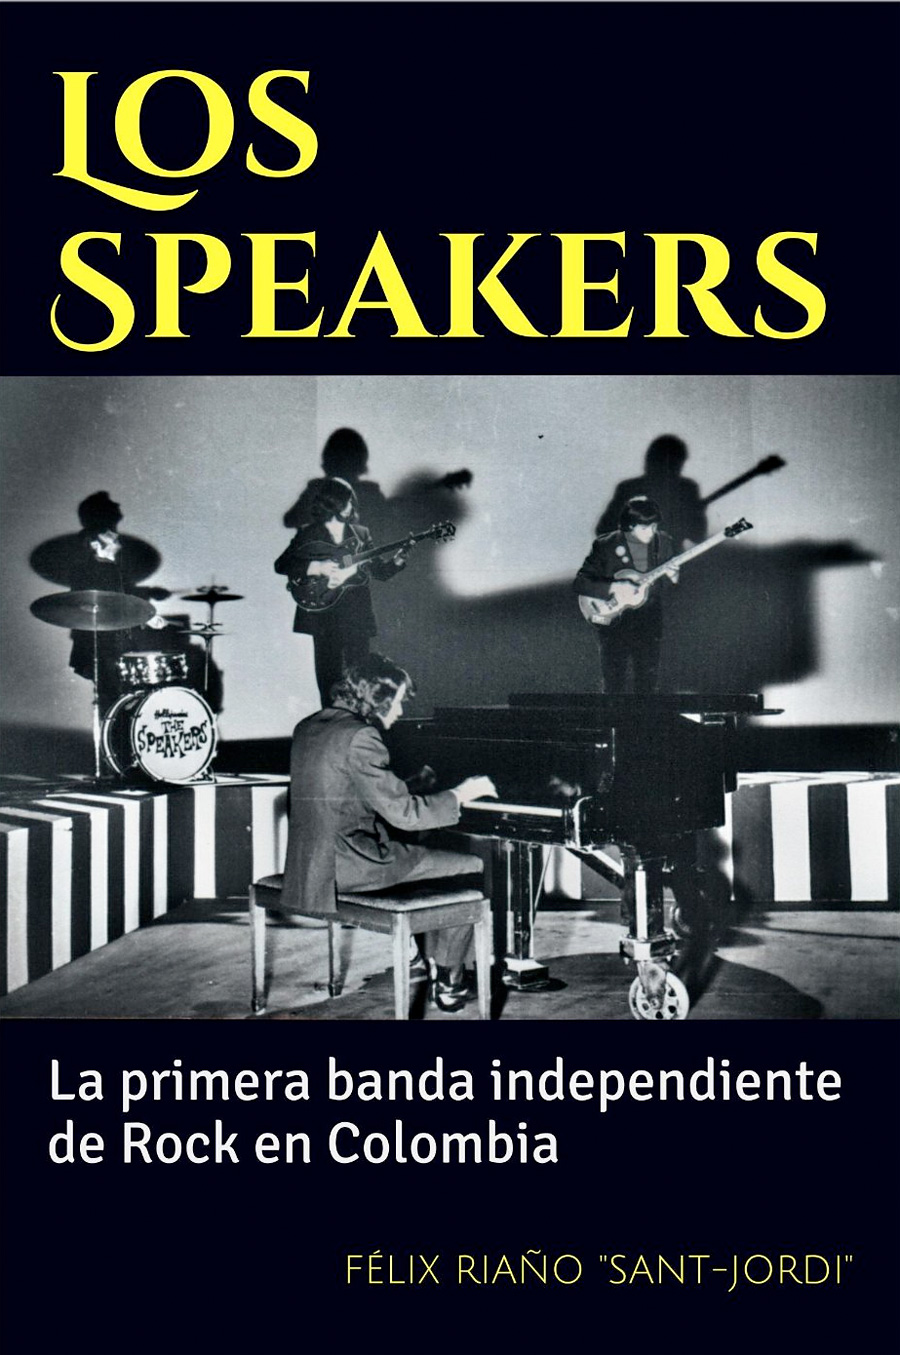 Los Speakers, primera banda de rock independiente en Colombia